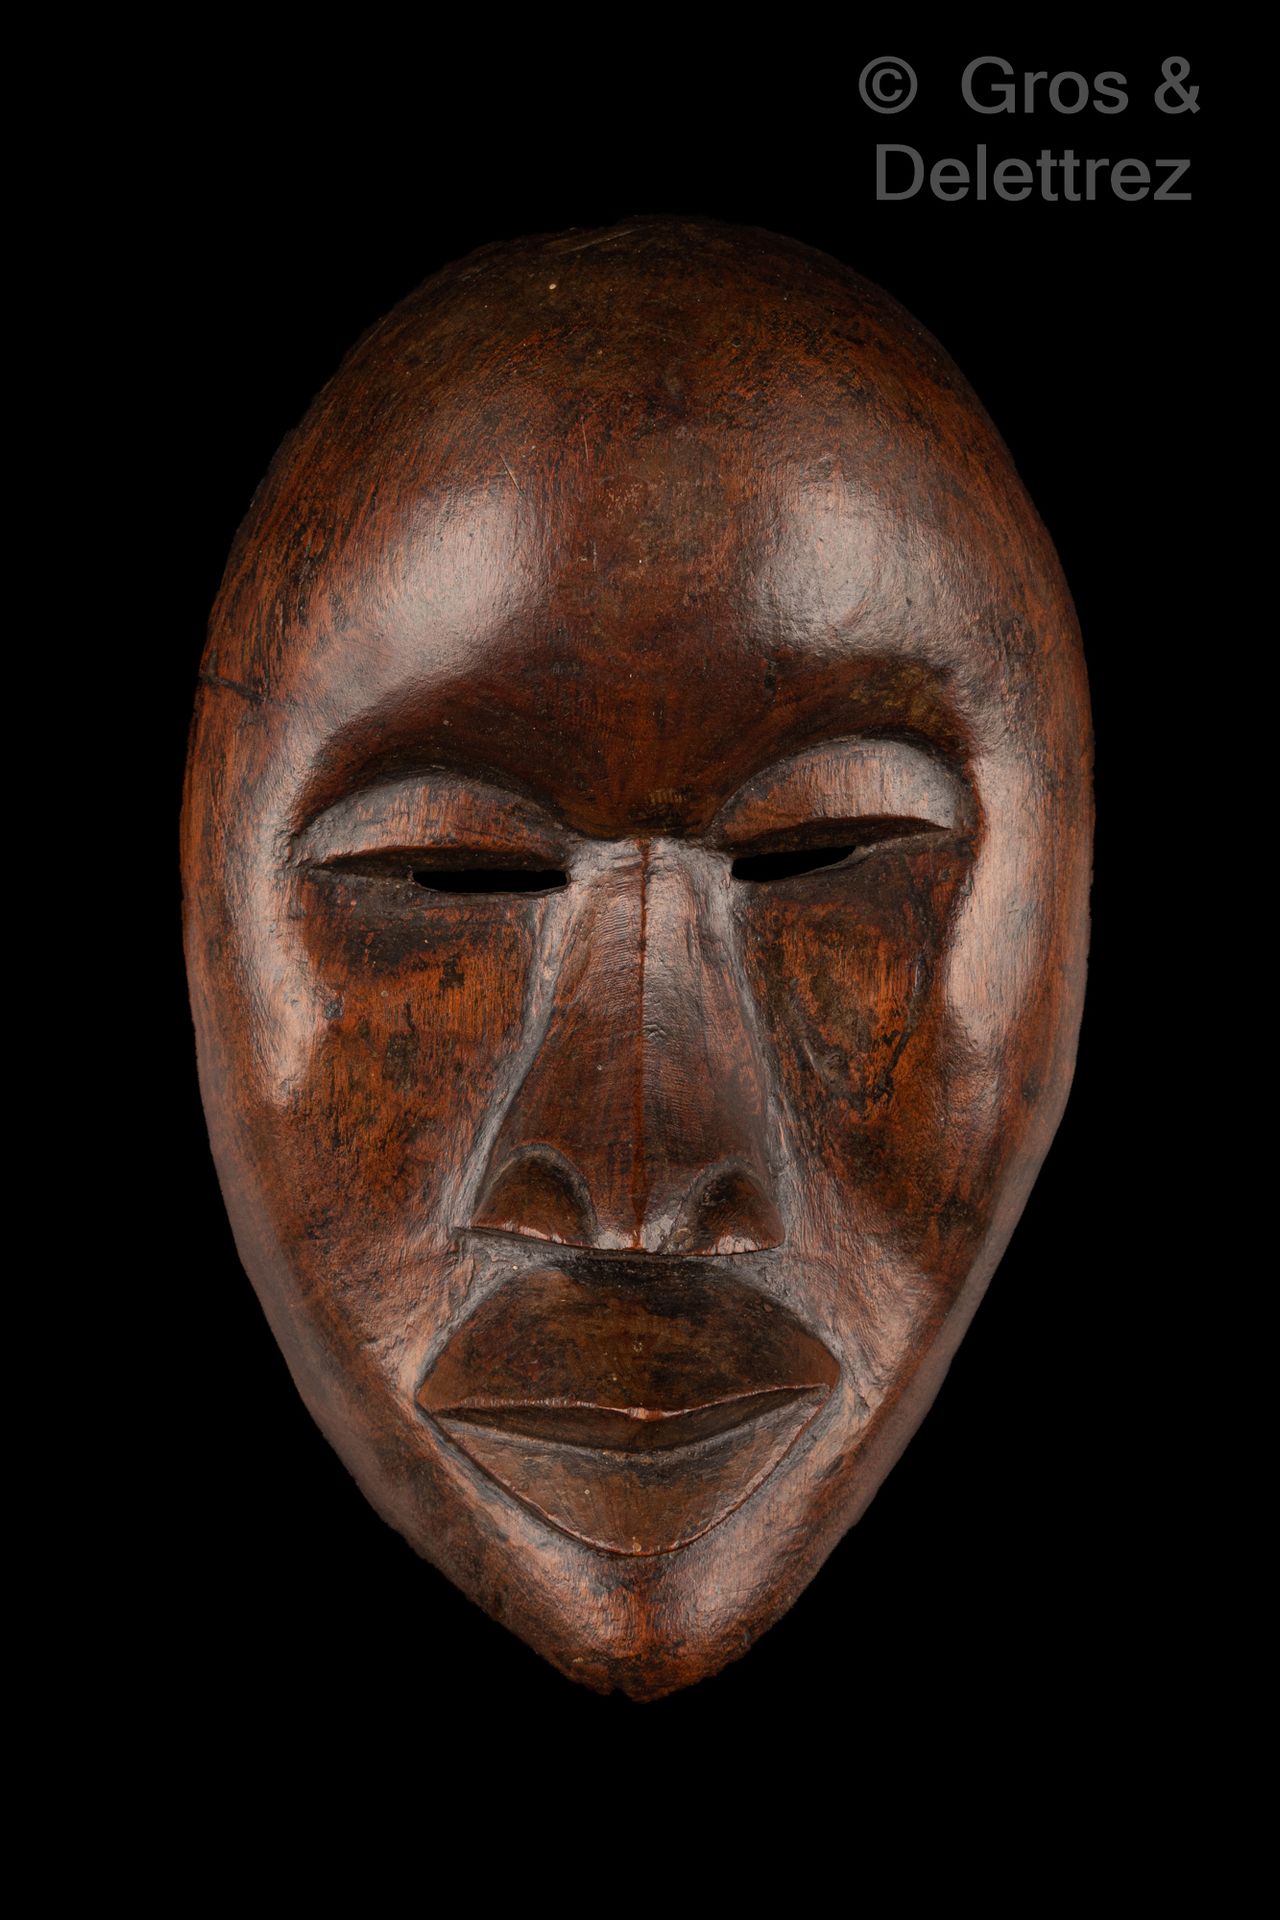 Null Máscara

Dan personas

Costa de Marfil

Madera despintada

H. 24,5 cm

Proc&hellip;